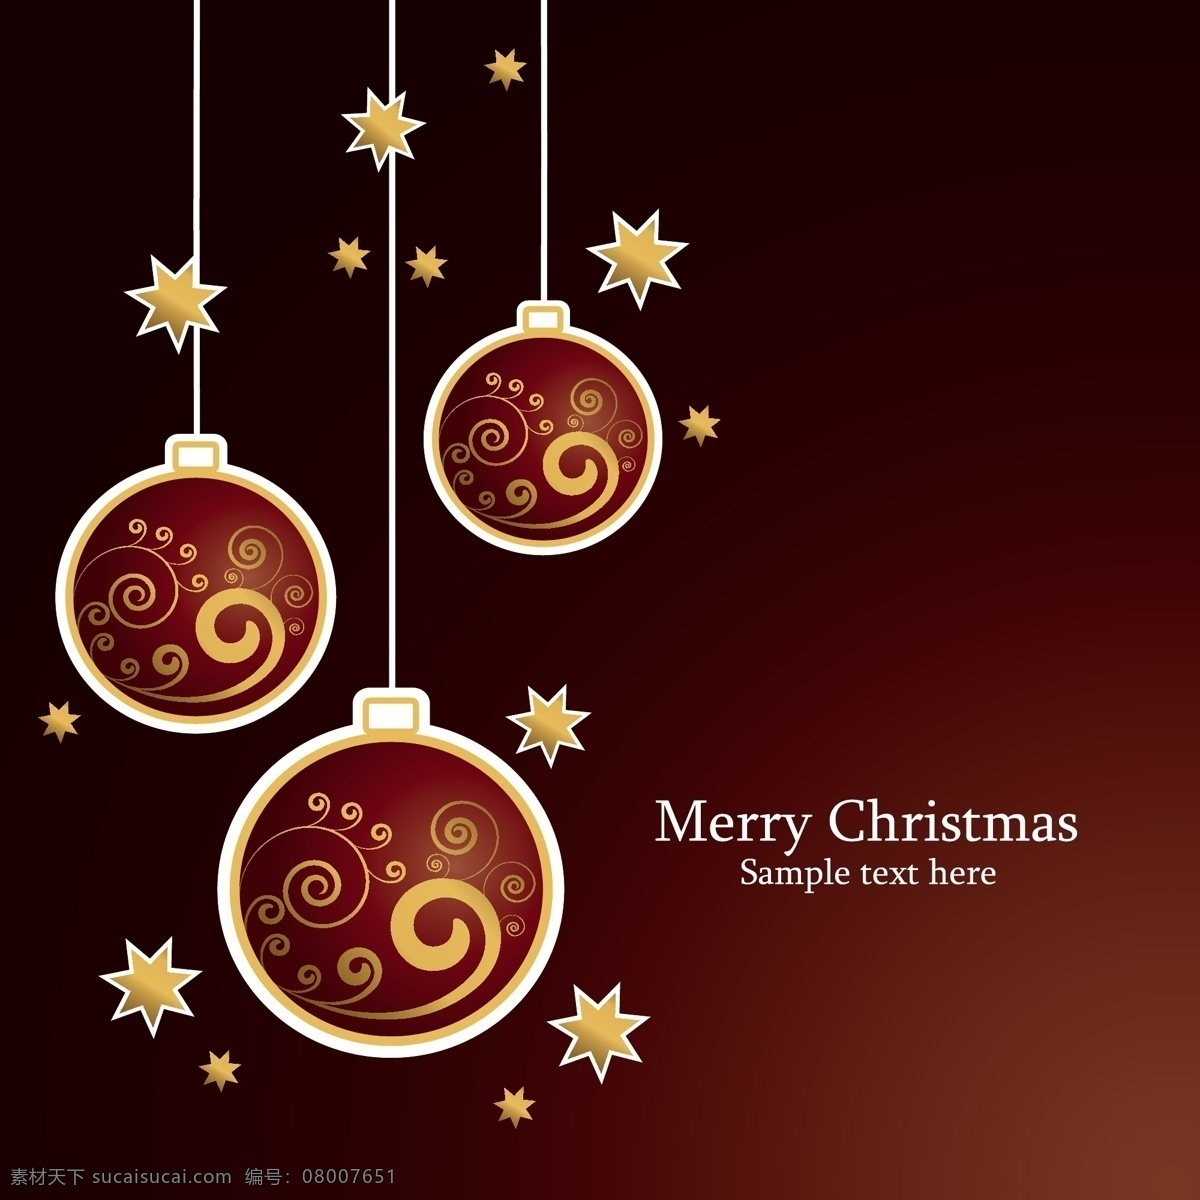 圣诞节 背景 模板 christmas merry 花纹 设计稿 同心圆 装饰球 五角星 节日大全 源文件 节日素材